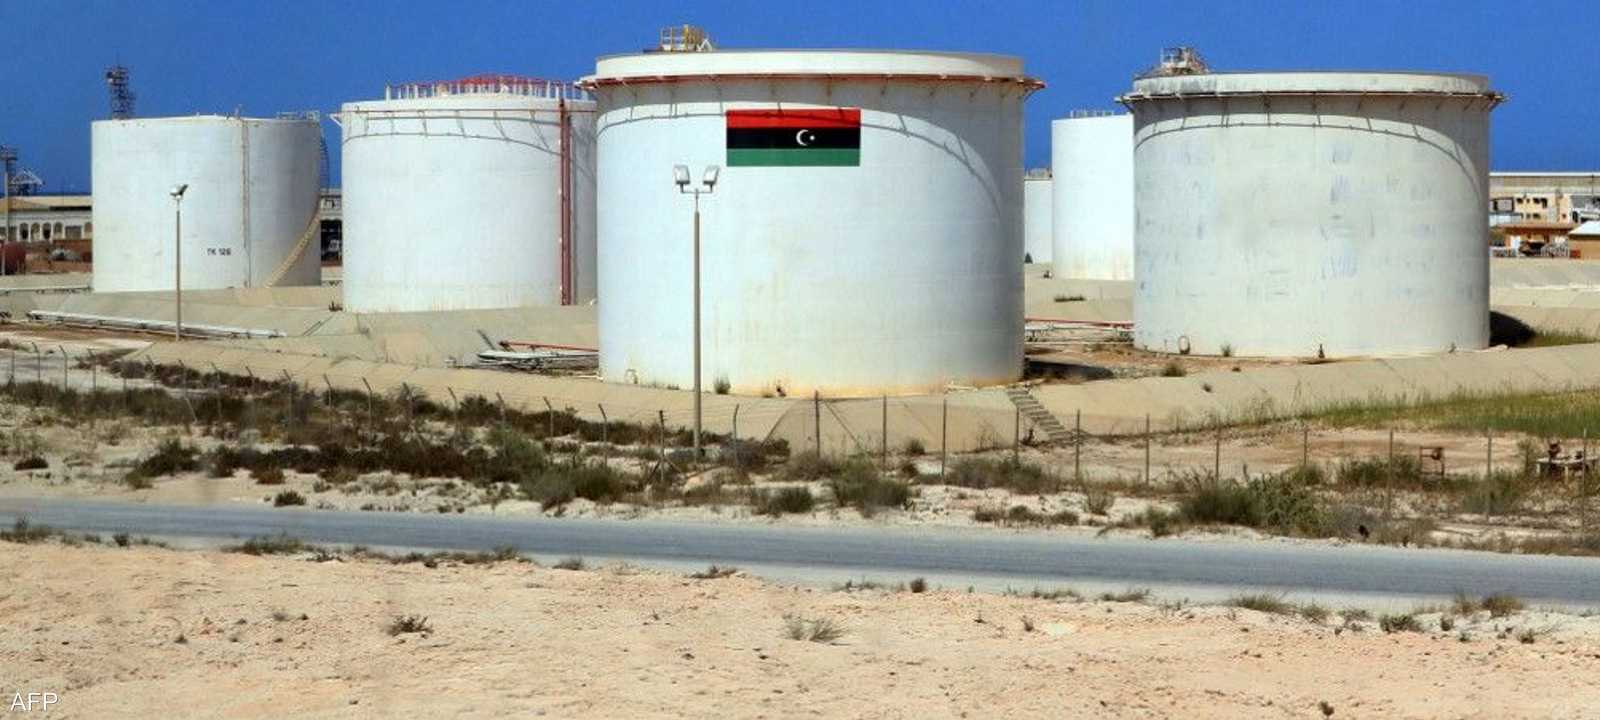 ليبيا تعد من الدول الغنية بالنفط.